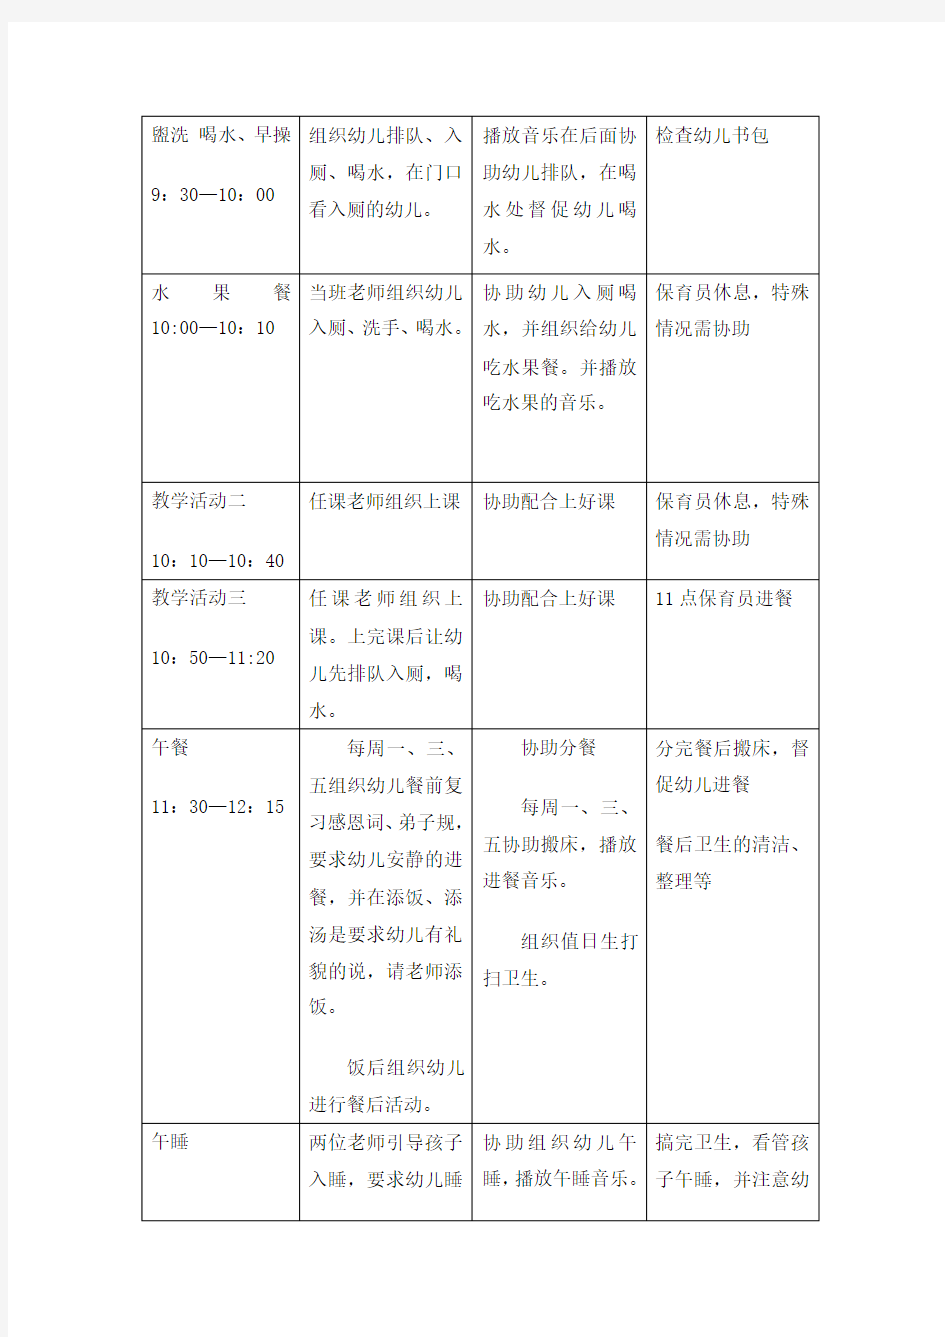 尚城幼儿园K3B班教师工作分配一日作息时间表